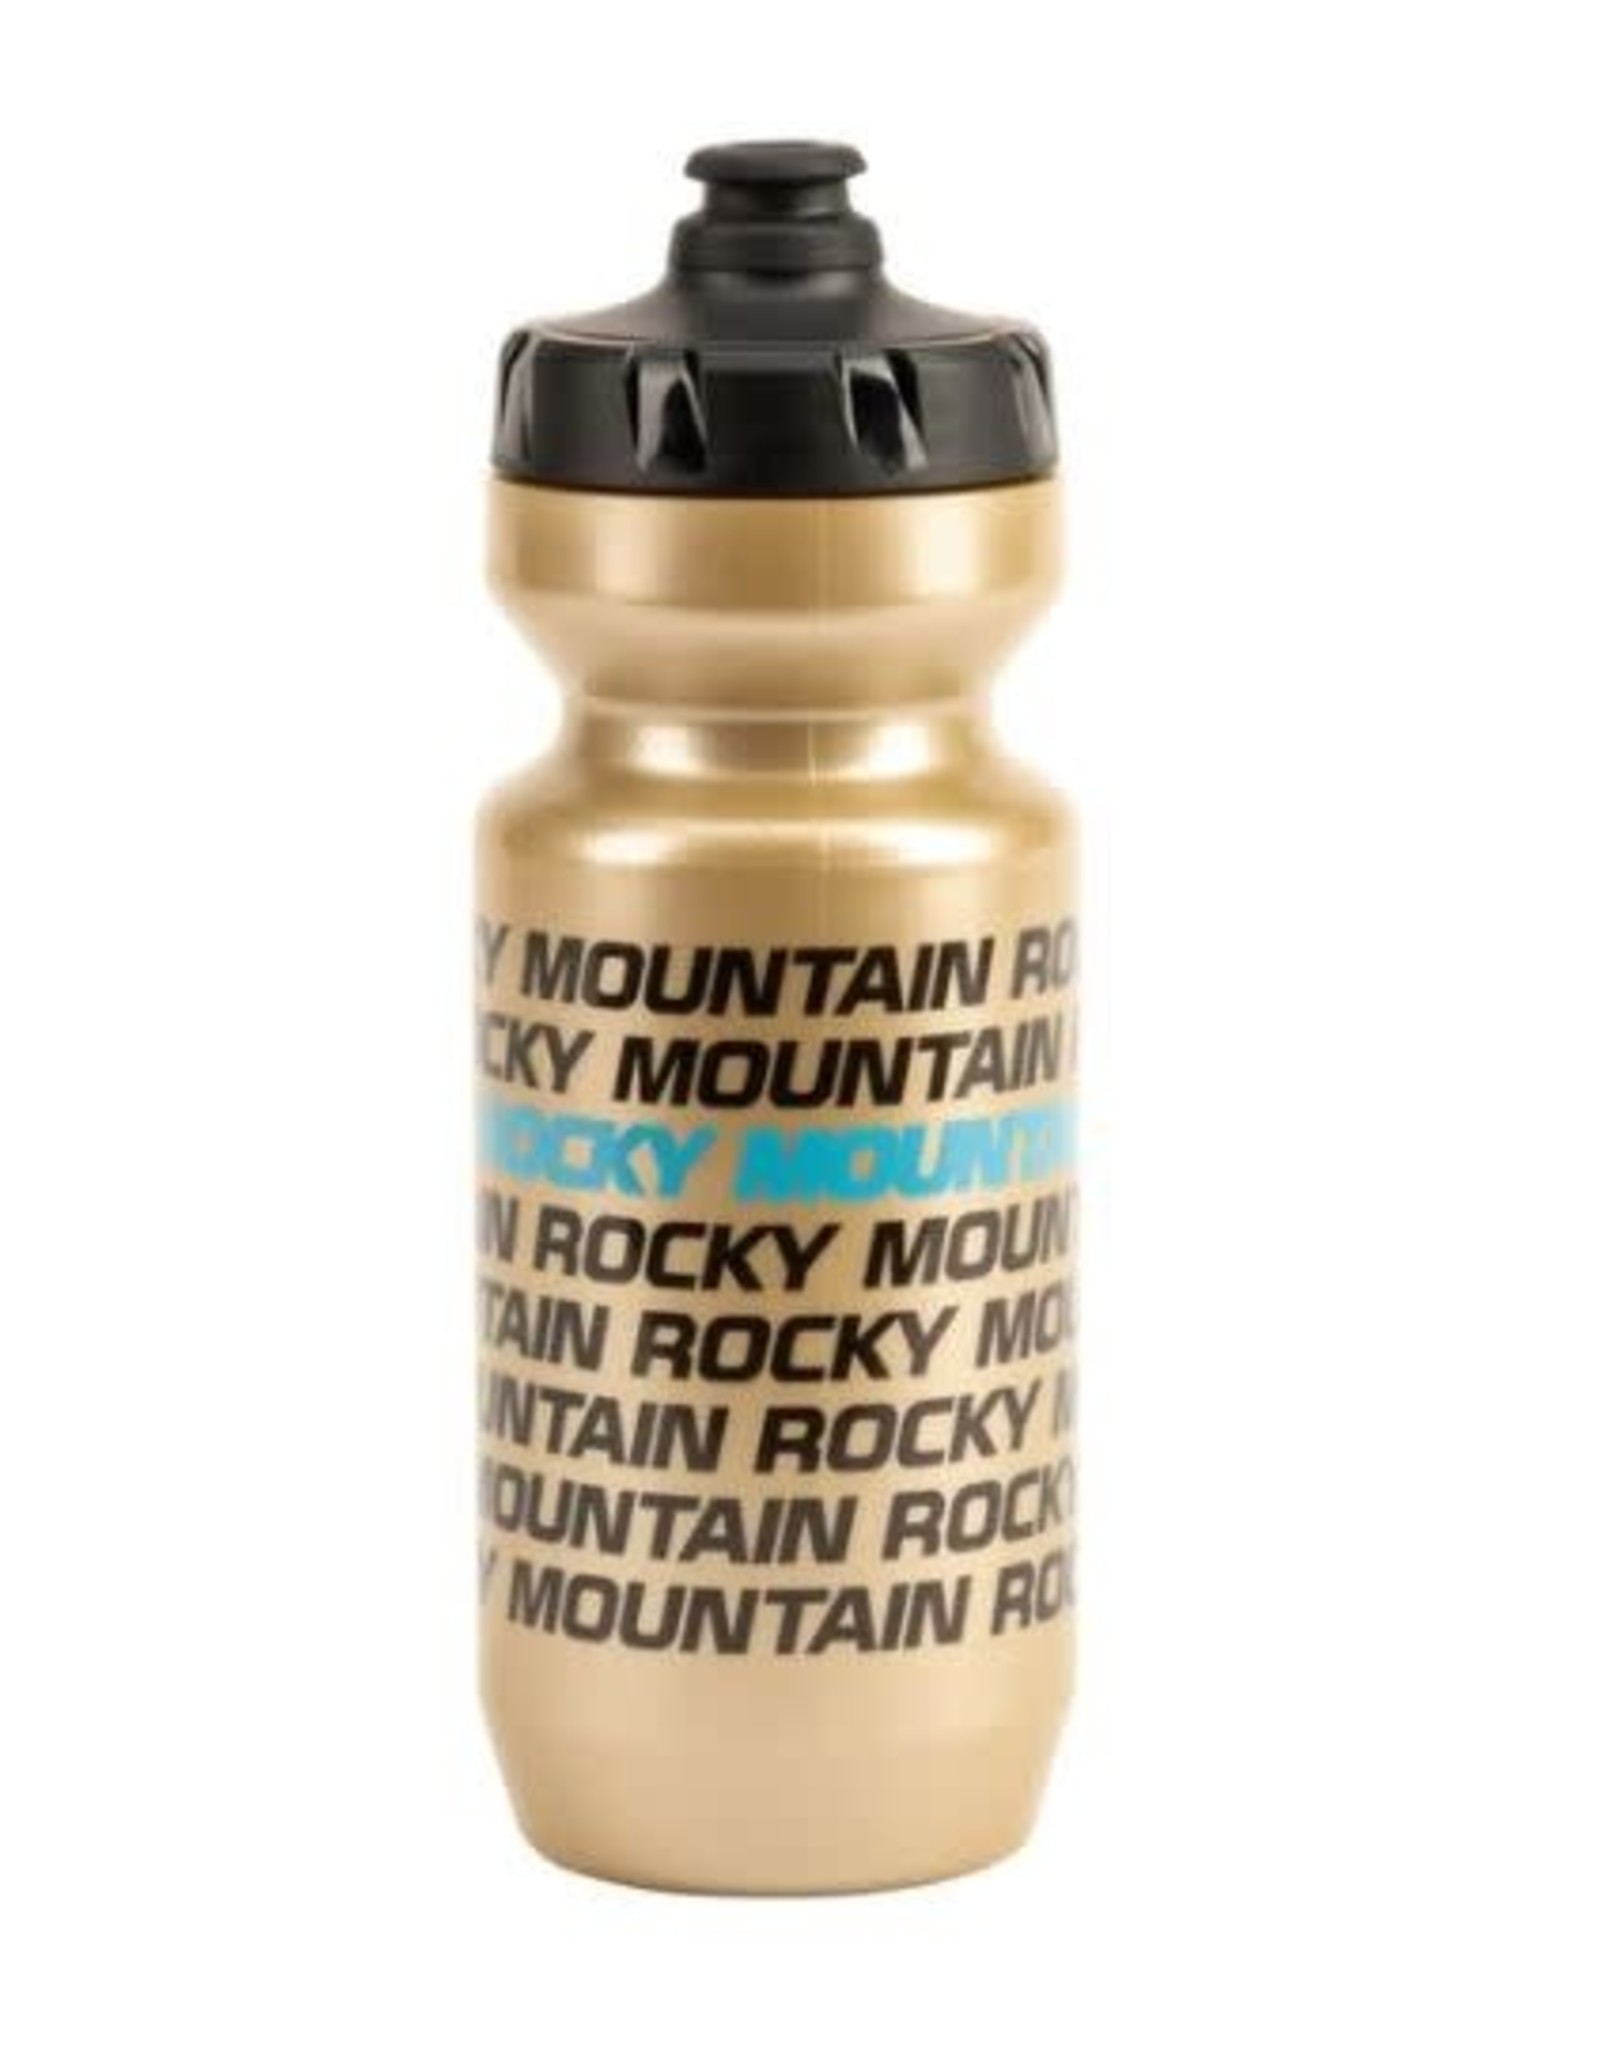 Rocky Mountain Bouteille Rocky Wordmark